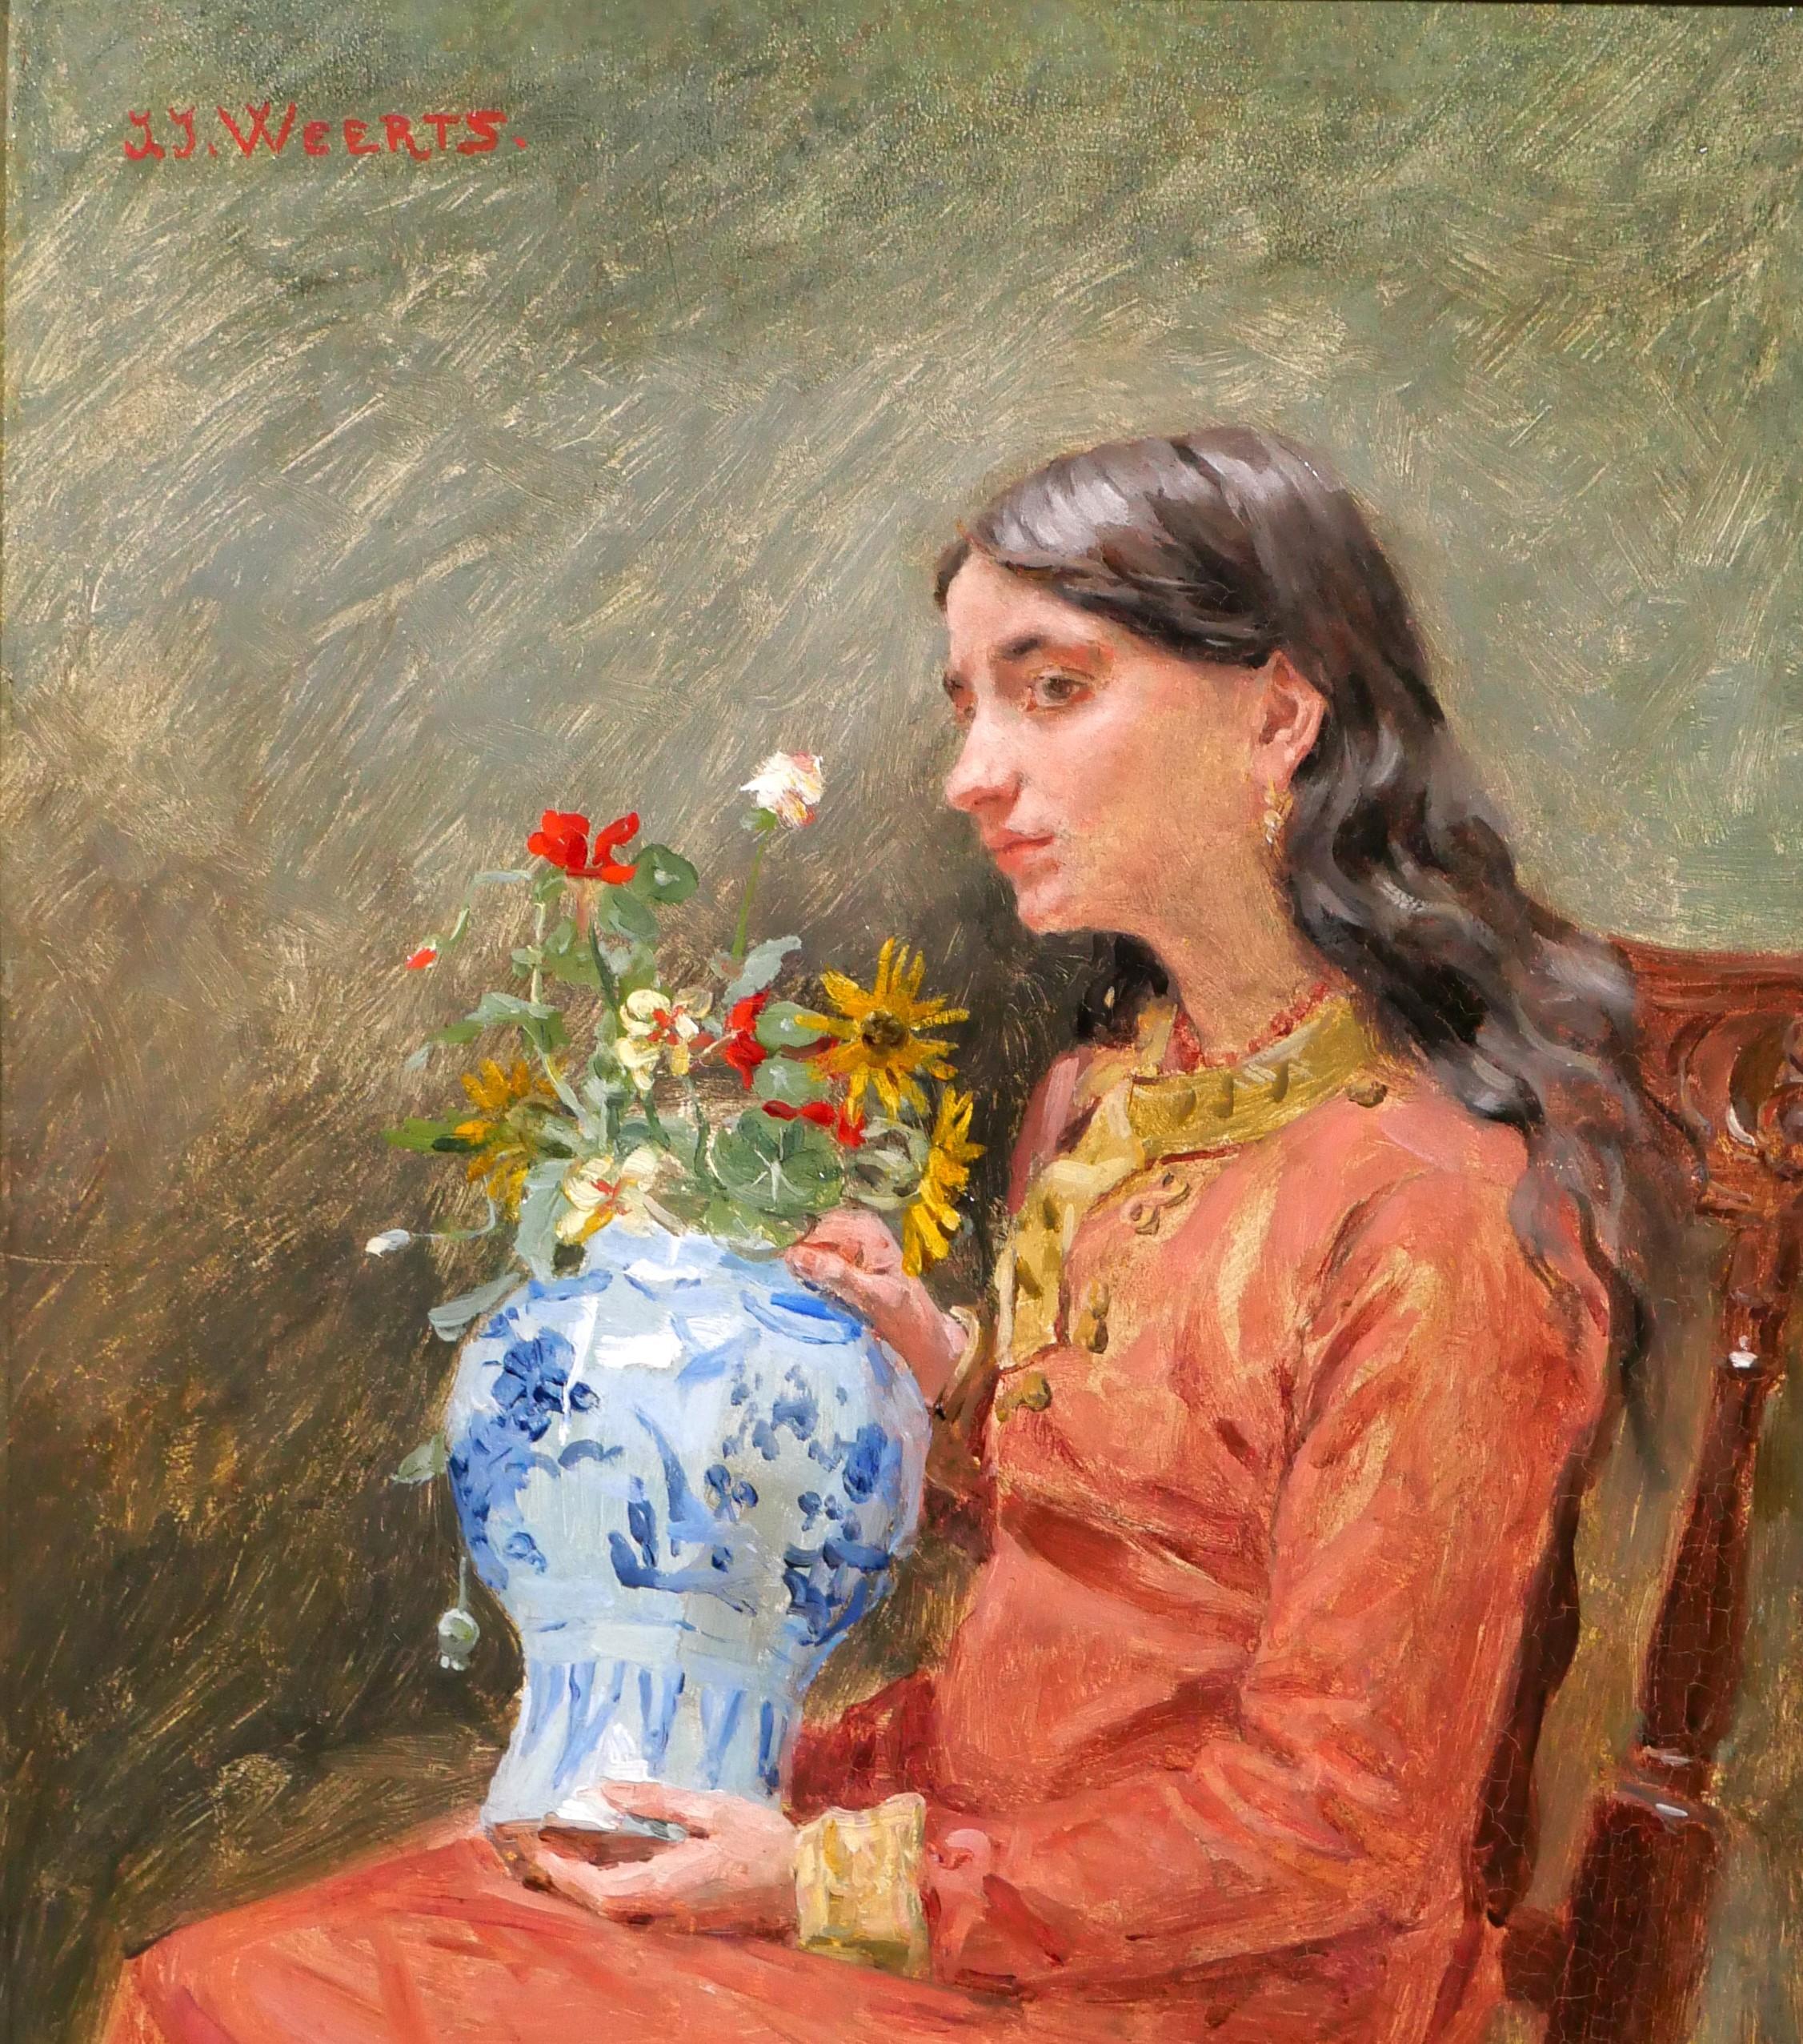 Portrait d'une jeune femme - rêvez de la beauté éphémère - Art nouveau Painting par Jean Joseph Weerts